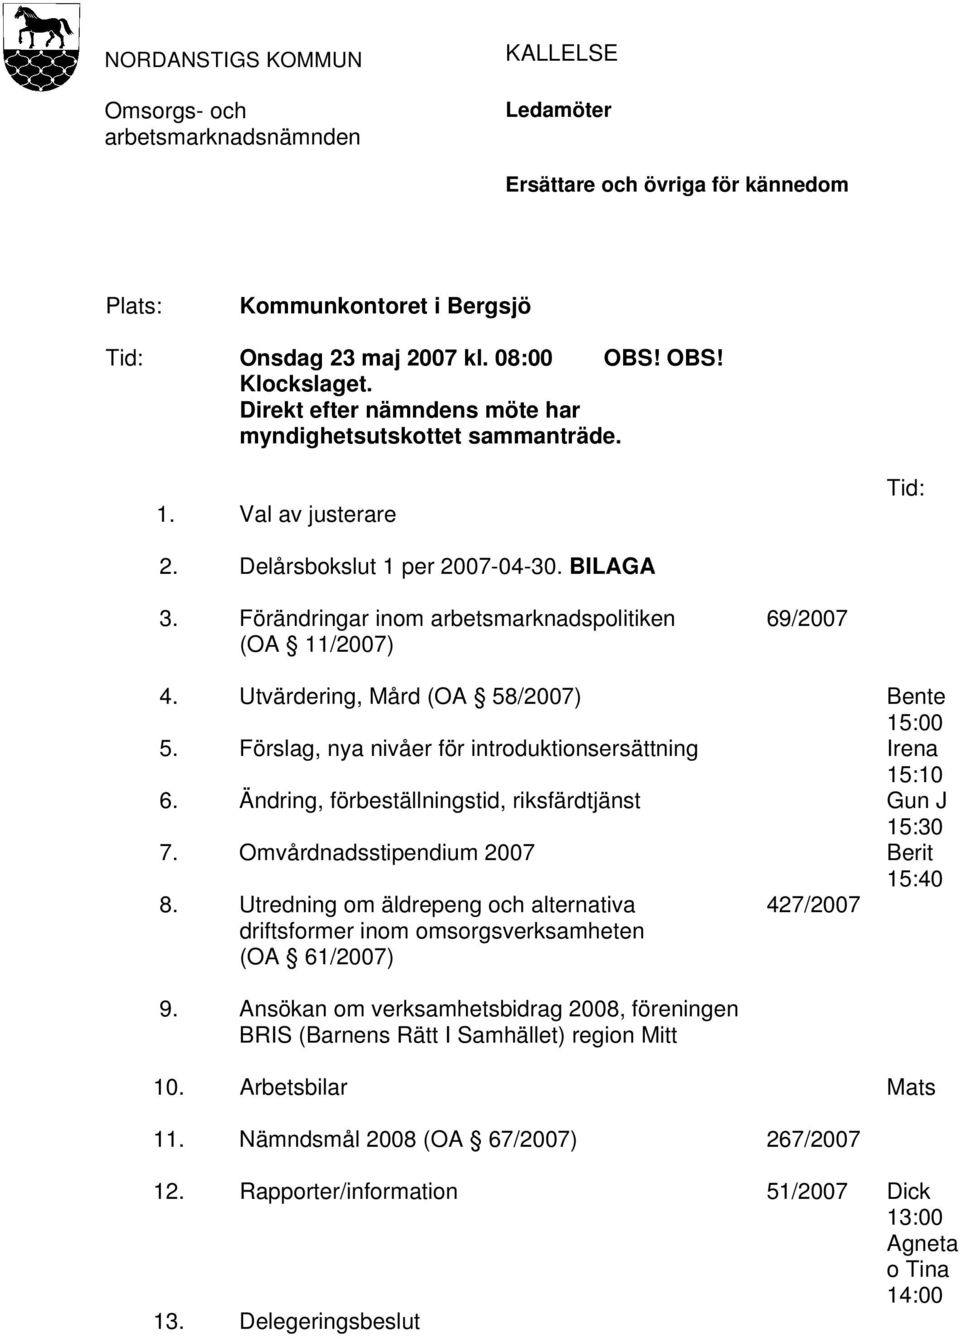 Utvärdering, Mård (OA 58/2007) Bente 15:00 5. Förslag, nya nivåer för introduktionsersättning Irena 15:10 6. Ändring, förbeställningstid, riksfärdtjänst Gun J 15:30 7.